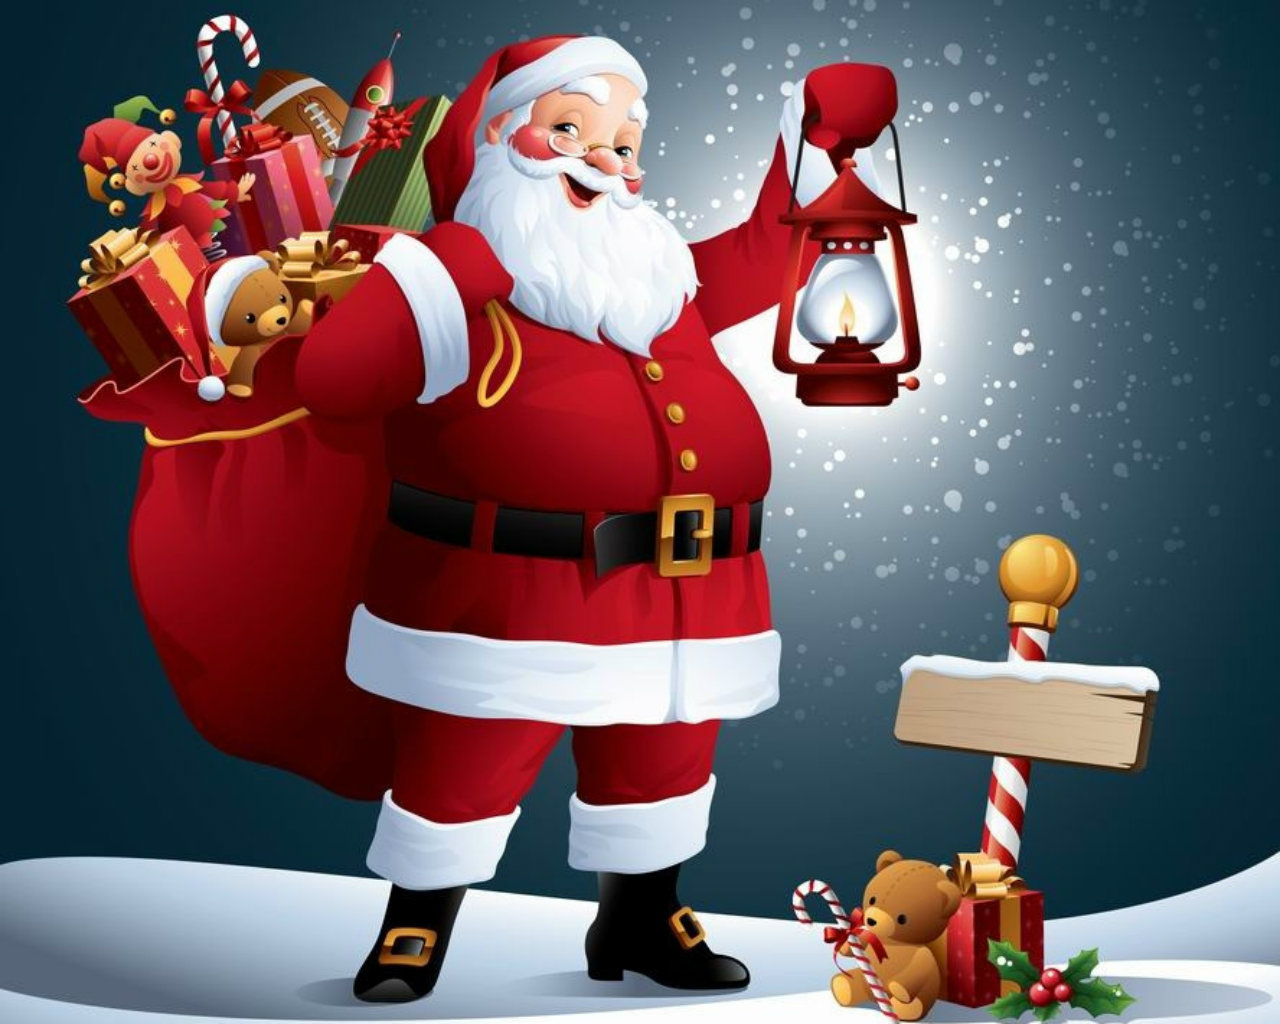 Hãy đến với hình ảnh về ông già Noel để cùng tận hưởng không khí Giáng Sinh ấm áp đầy niềm vui. Những hình ảnh về ông già Noel sẽ khiến bạn liên tưởng đến những câu chuyện cổ tích và những phần quà thật đáng yêu.